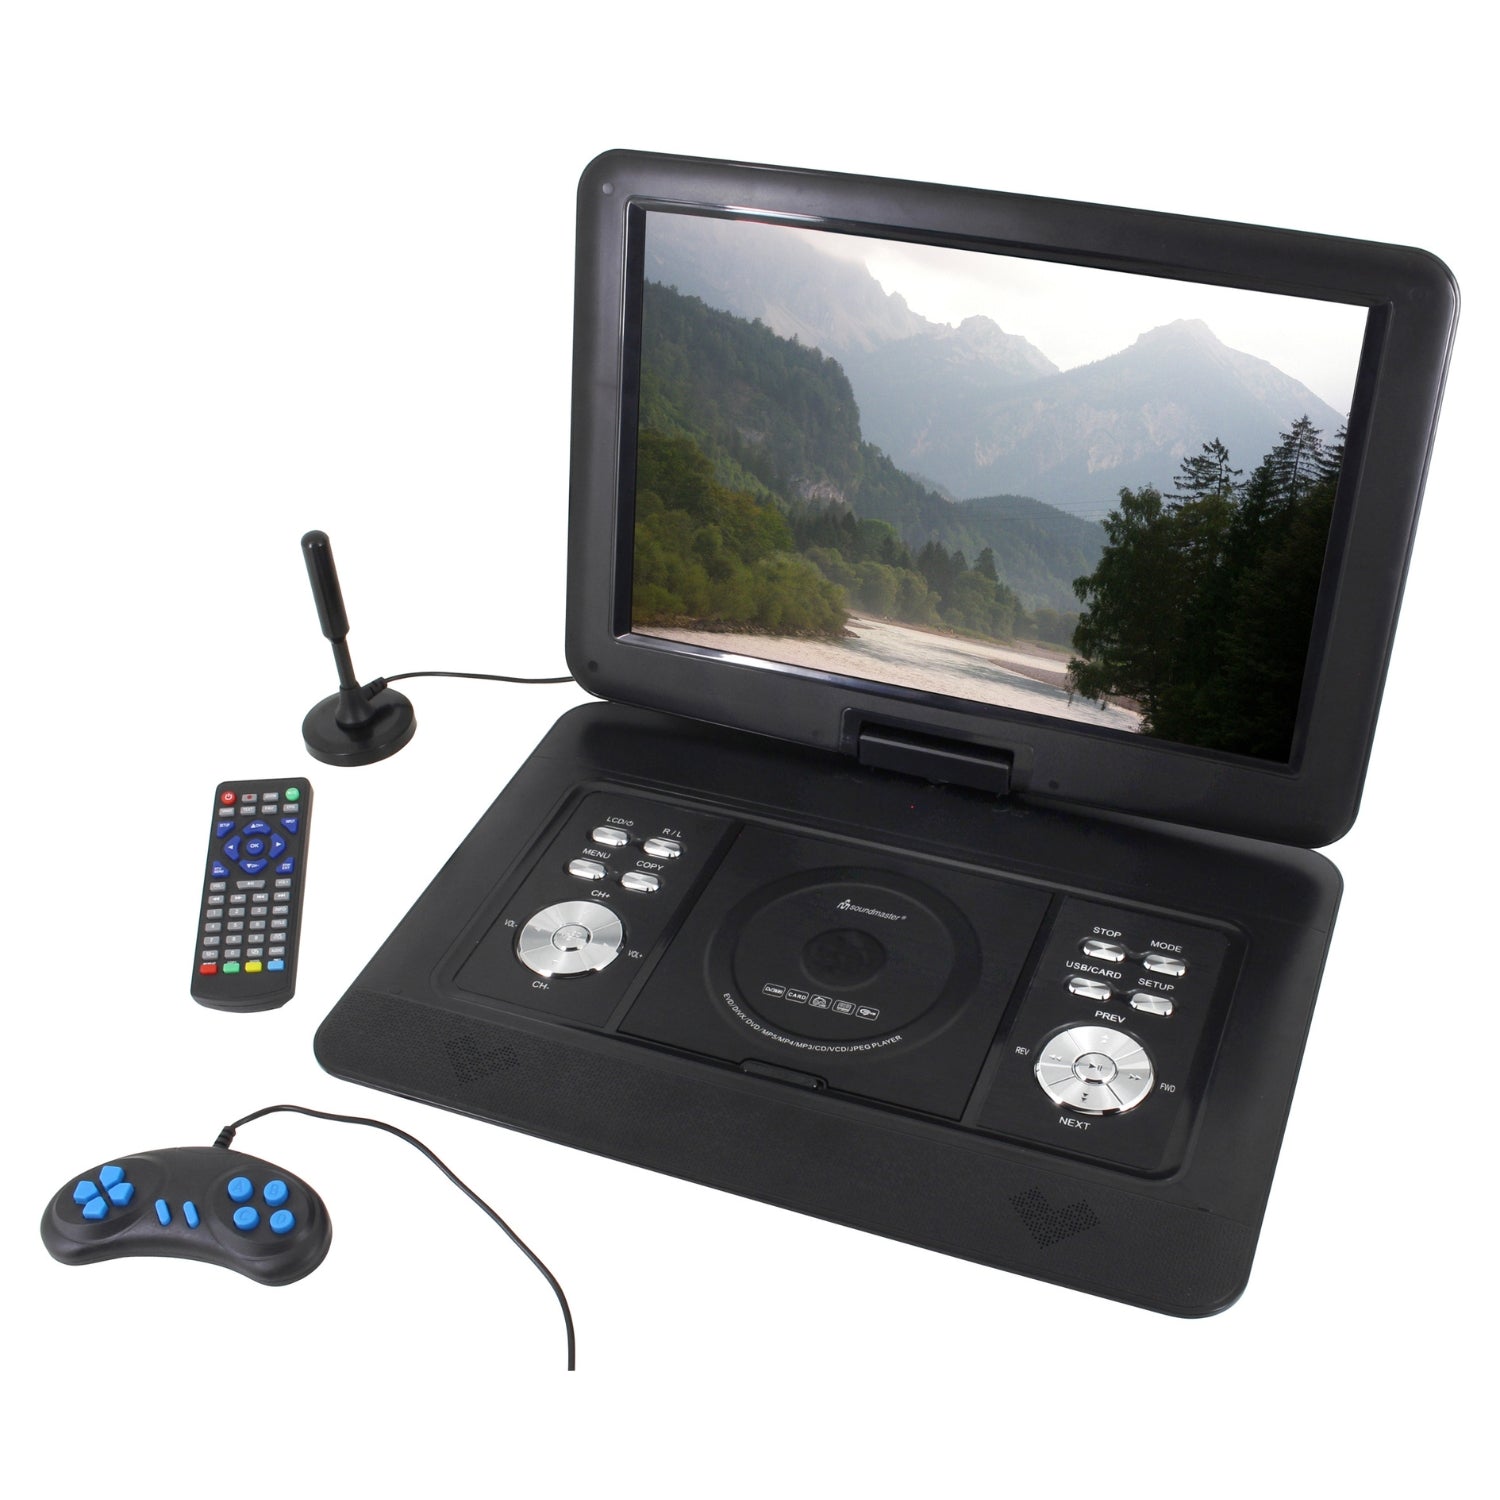 Soundmaster PDB1600SW tragbarer DVD-Player mit DVB-T2 HD-Tuner und 15.4" TFT Bildschirm inkl. 300 Spielen